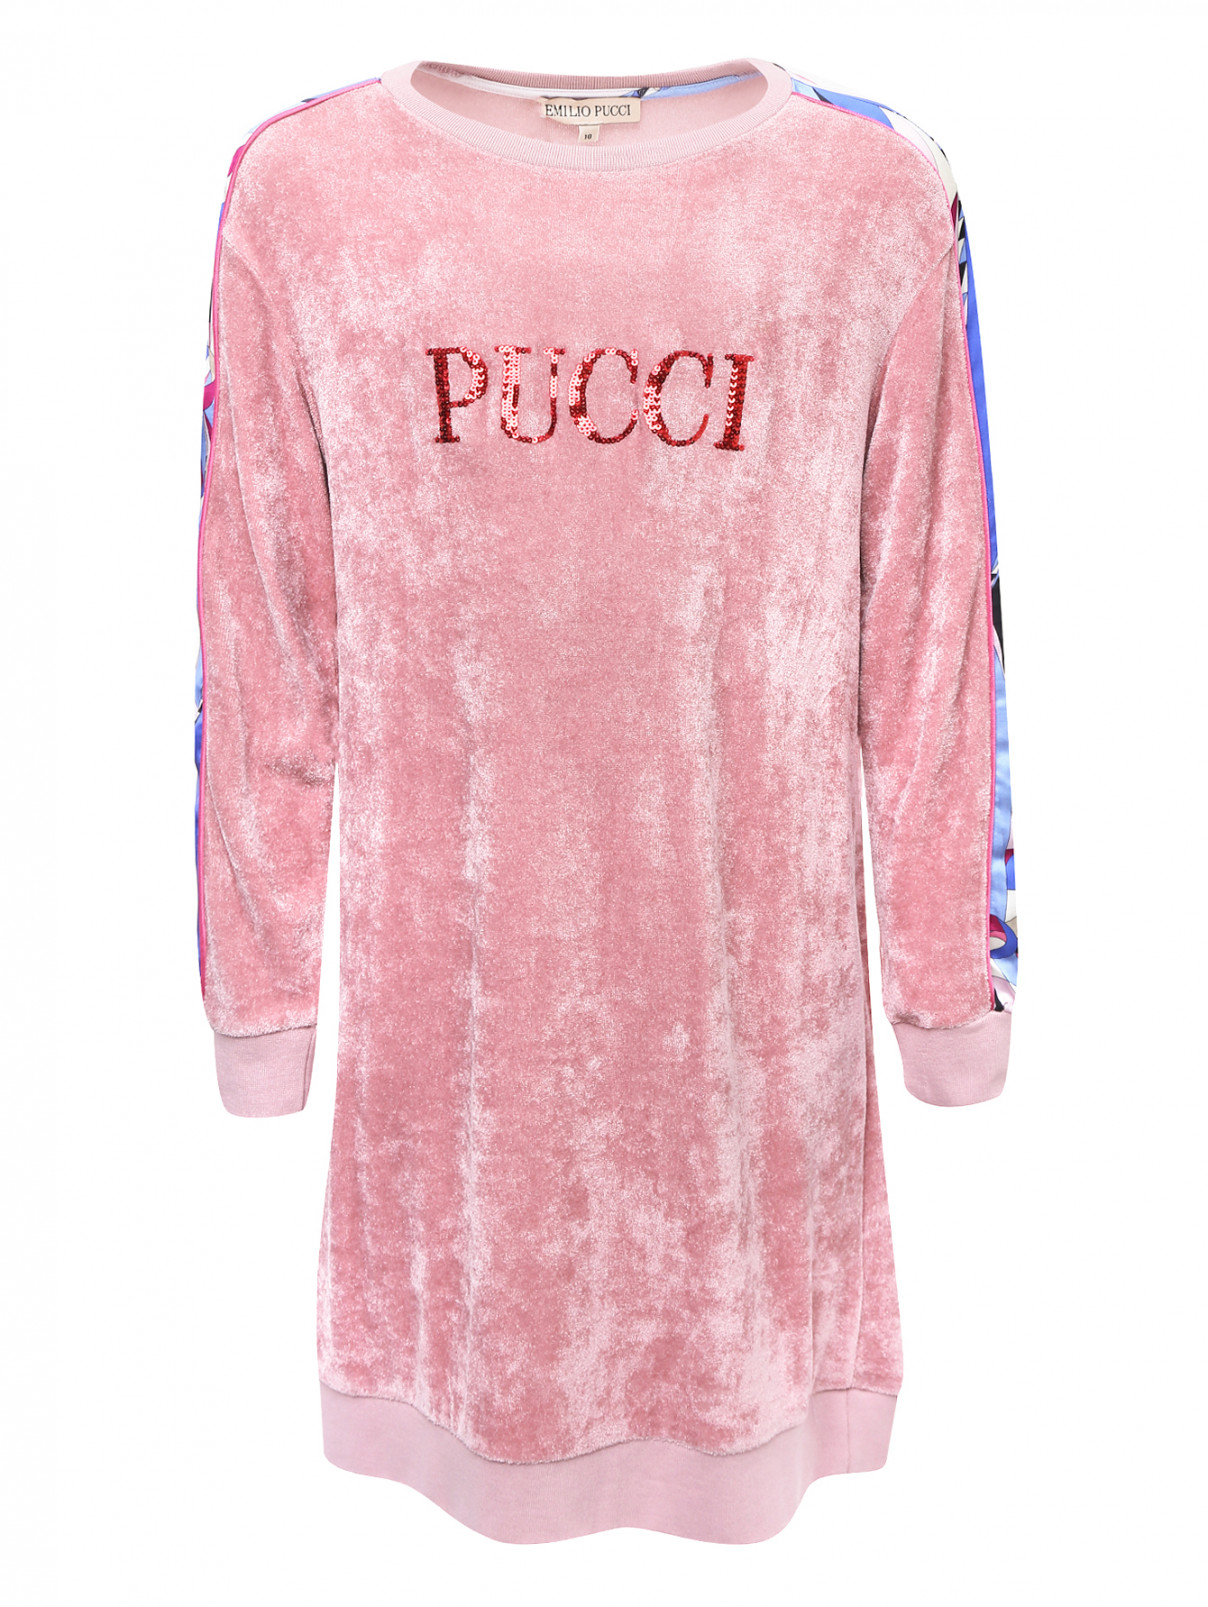 Платье велюровое с шелковыми вставками Emilio Pucci  –  Общий вид  – Цвет:  Розовый